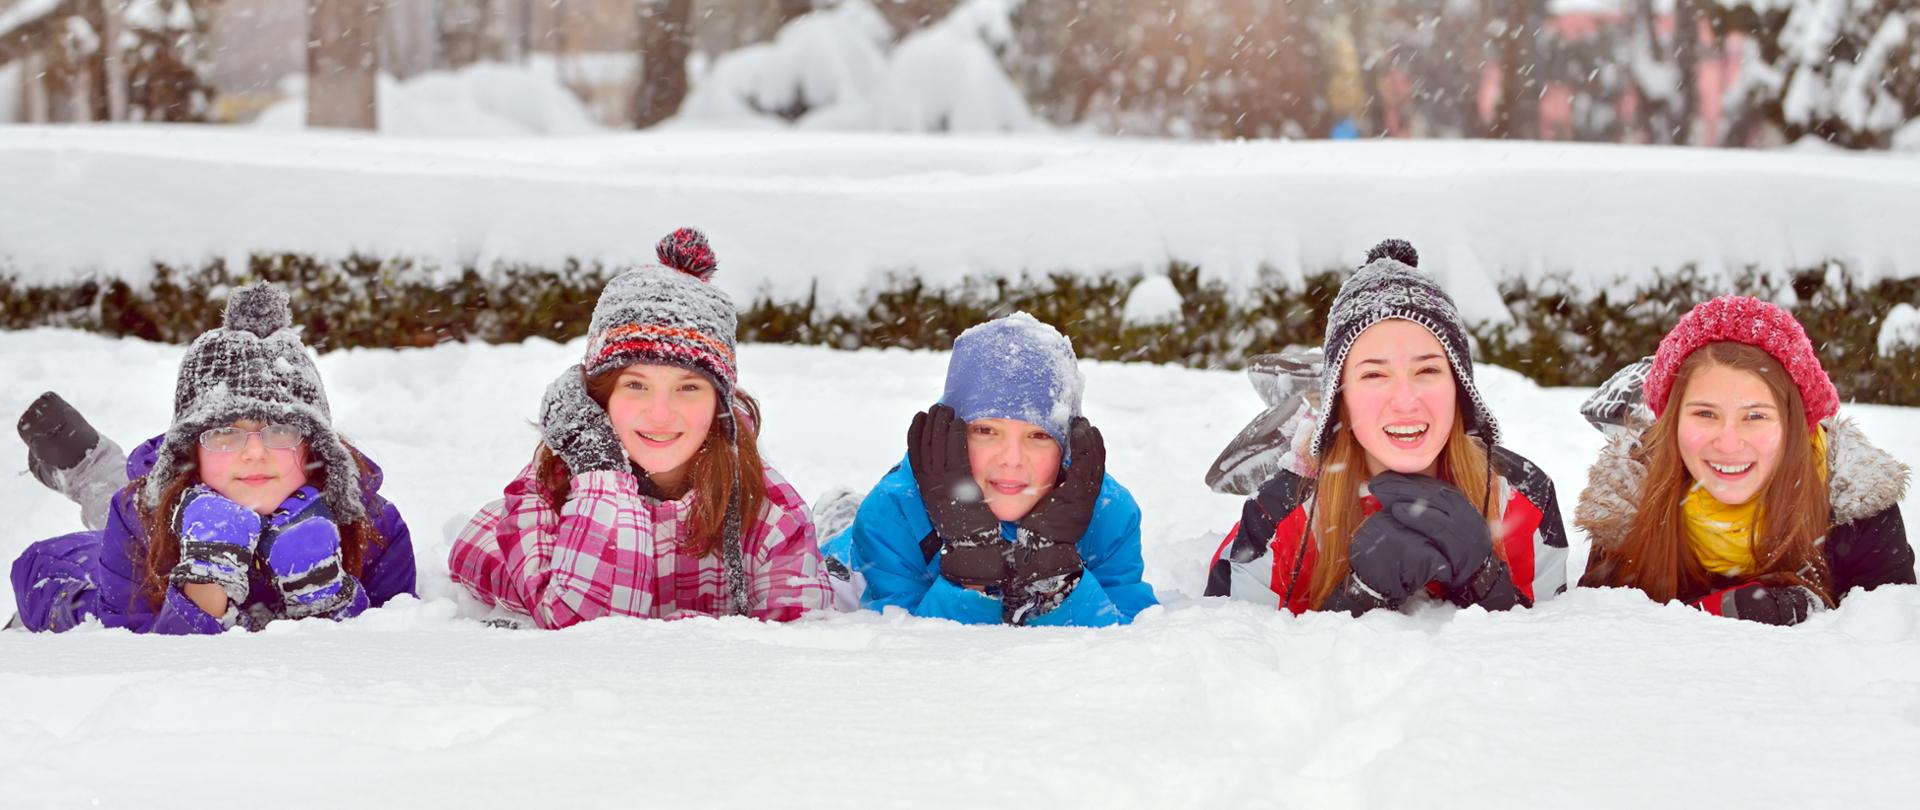 Grupa dzieci bawiąca się w śniegu zimą.